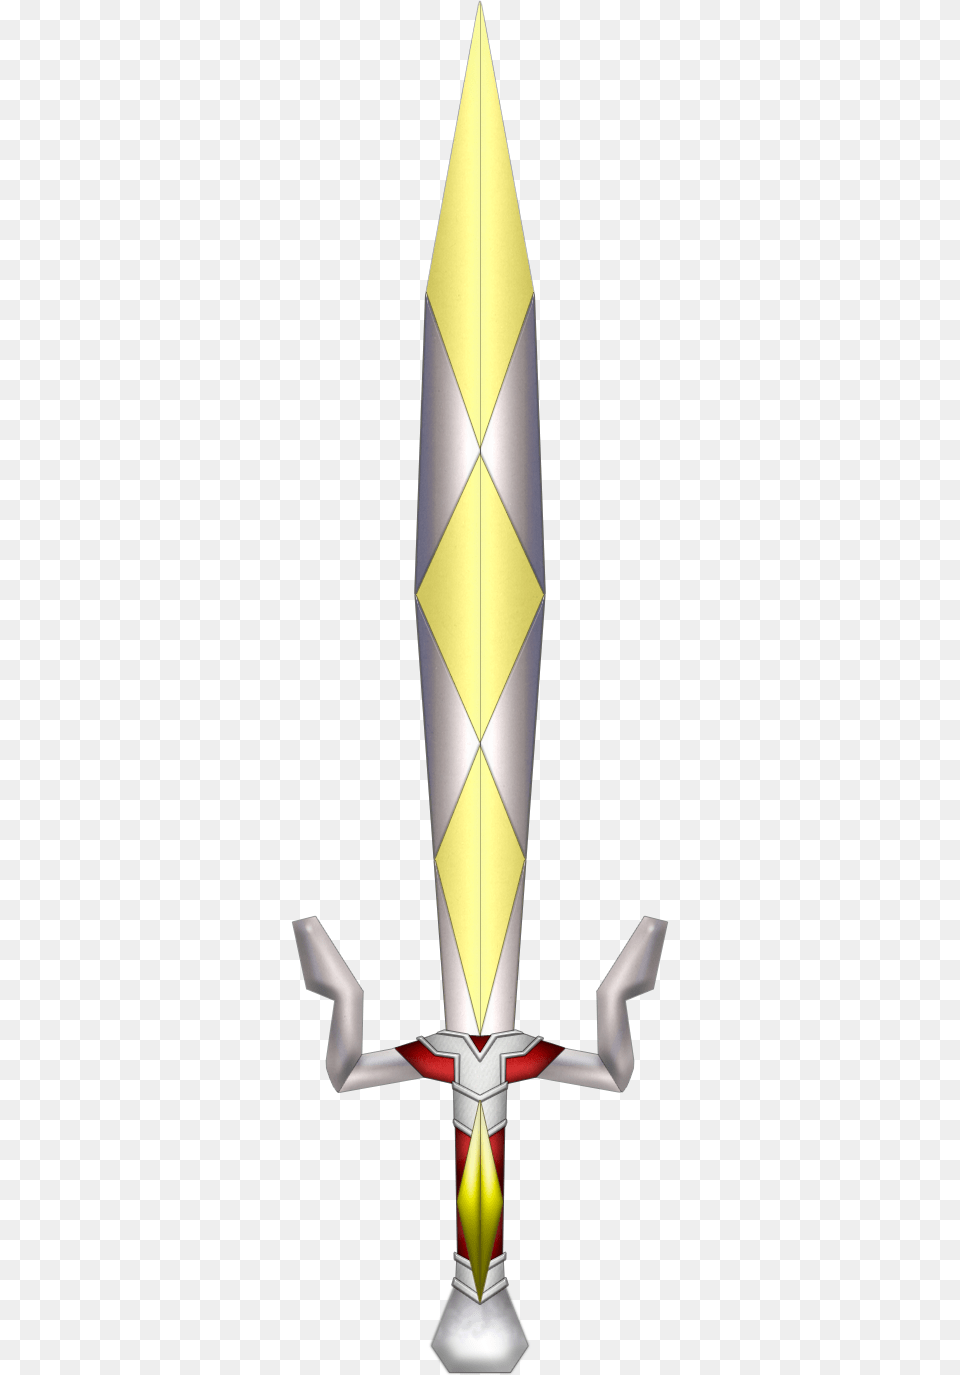 The Legend Of Zelda Loz Mm Gilded Sword, Weapon Free Transparent Png